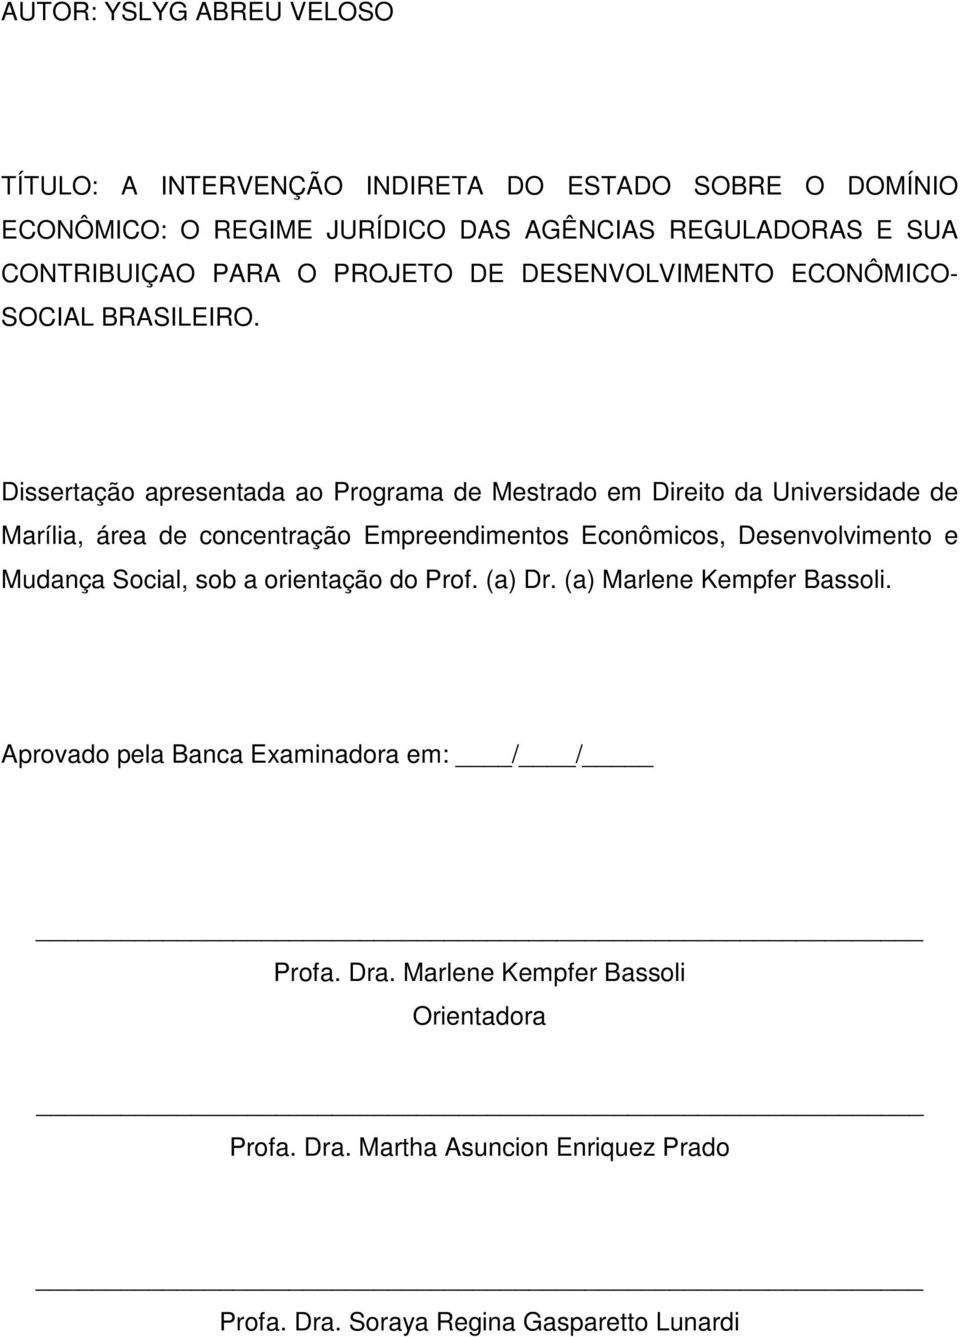 Dissertação apresentada ao Programa de Mestrado em Direito da Universidade de Marília, área de concentração Empreendimentos Econômicos, Desenvolvimento e